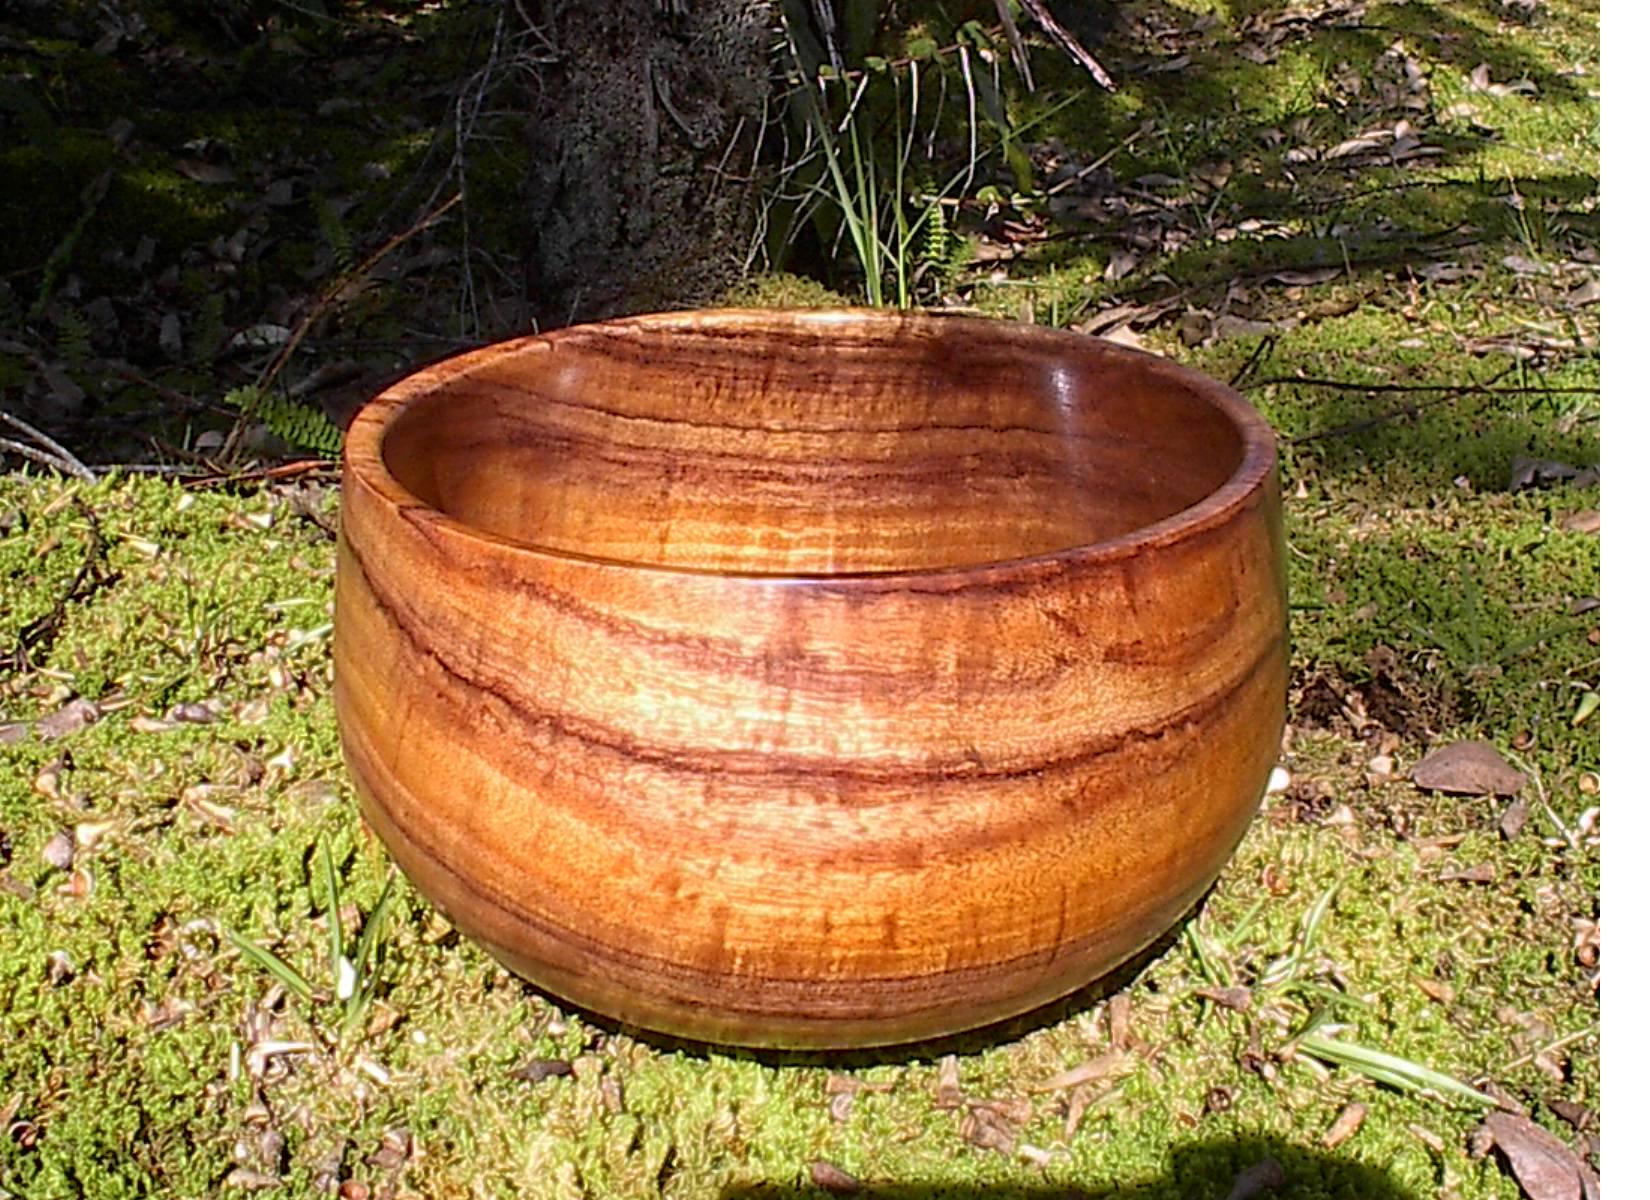 Koa wood bowl